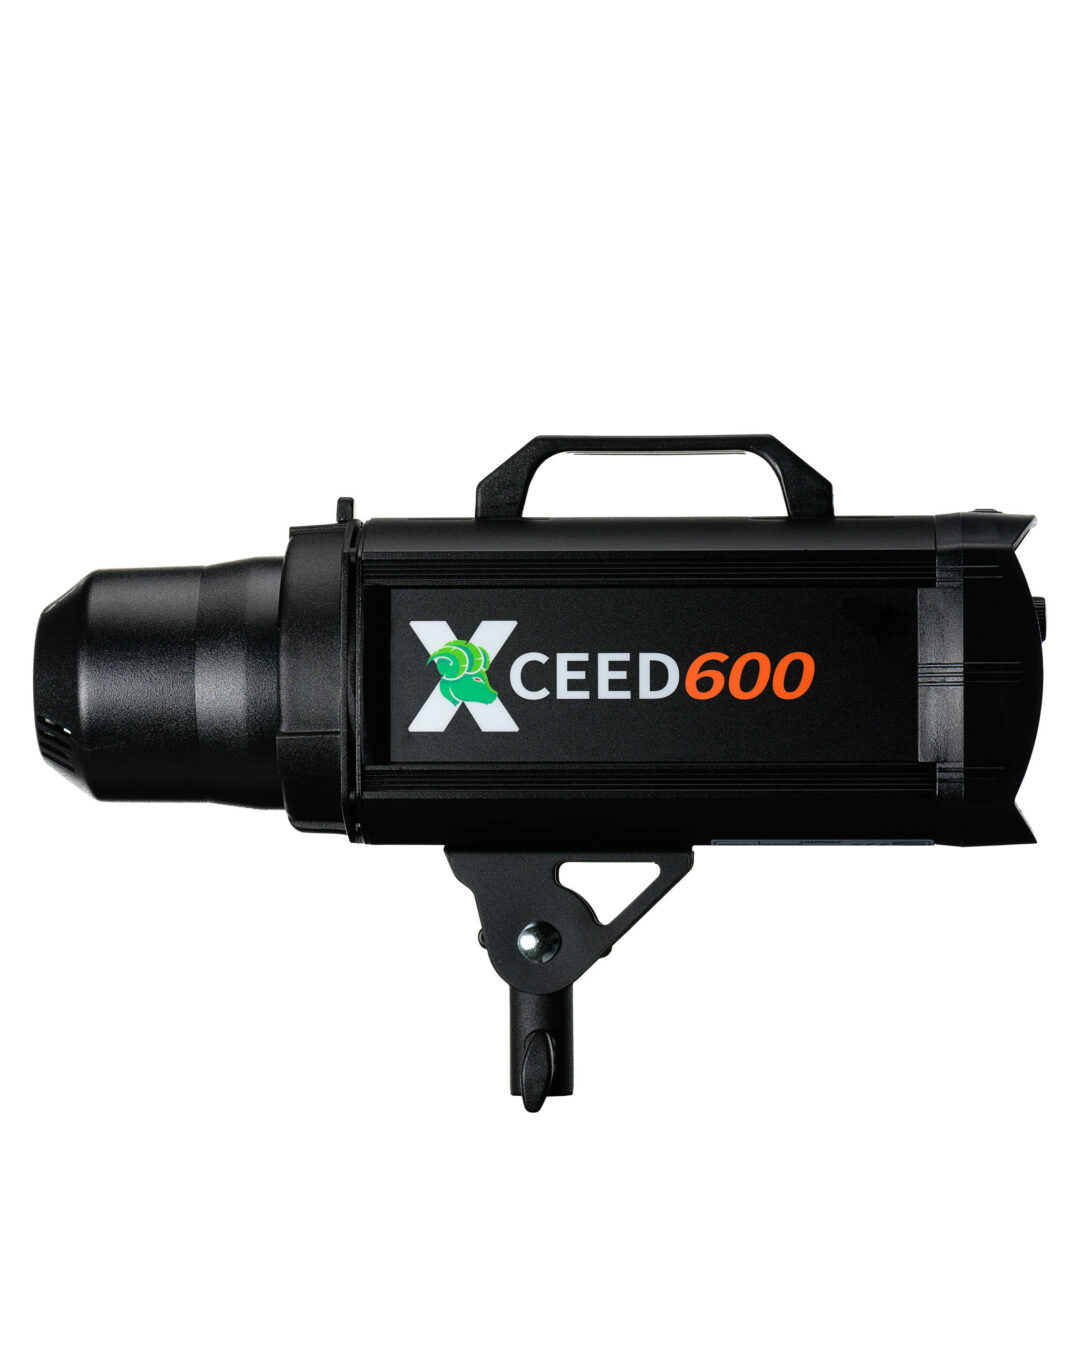 AX-XCED-600 AriesX Xceed 600 Studio Flash (6)